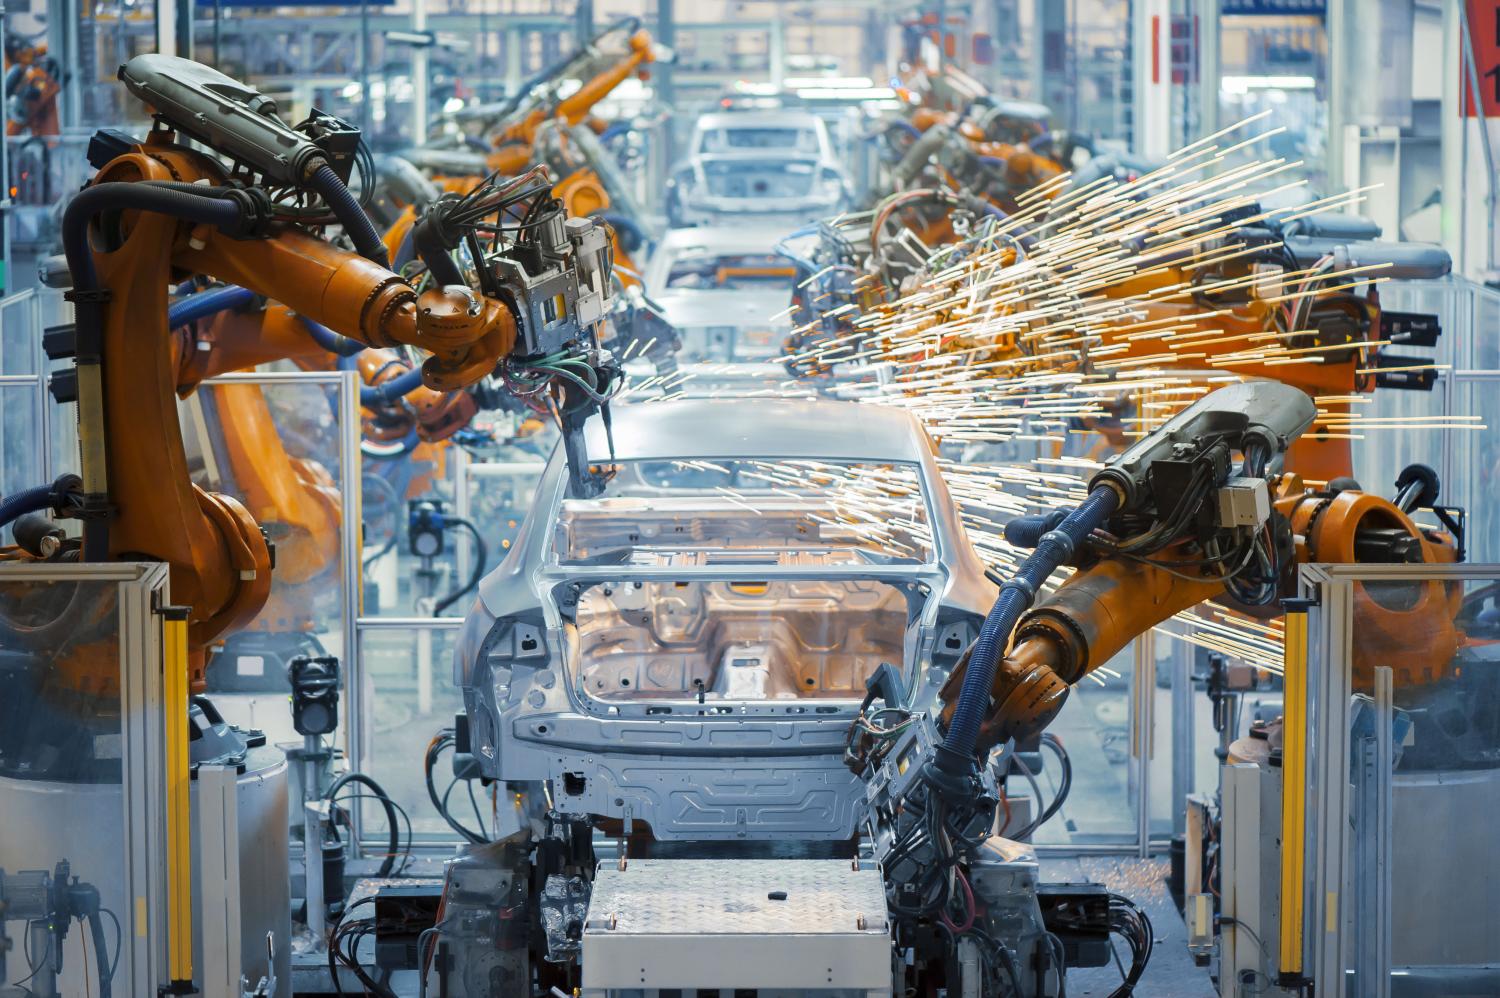 Automobile production using robots